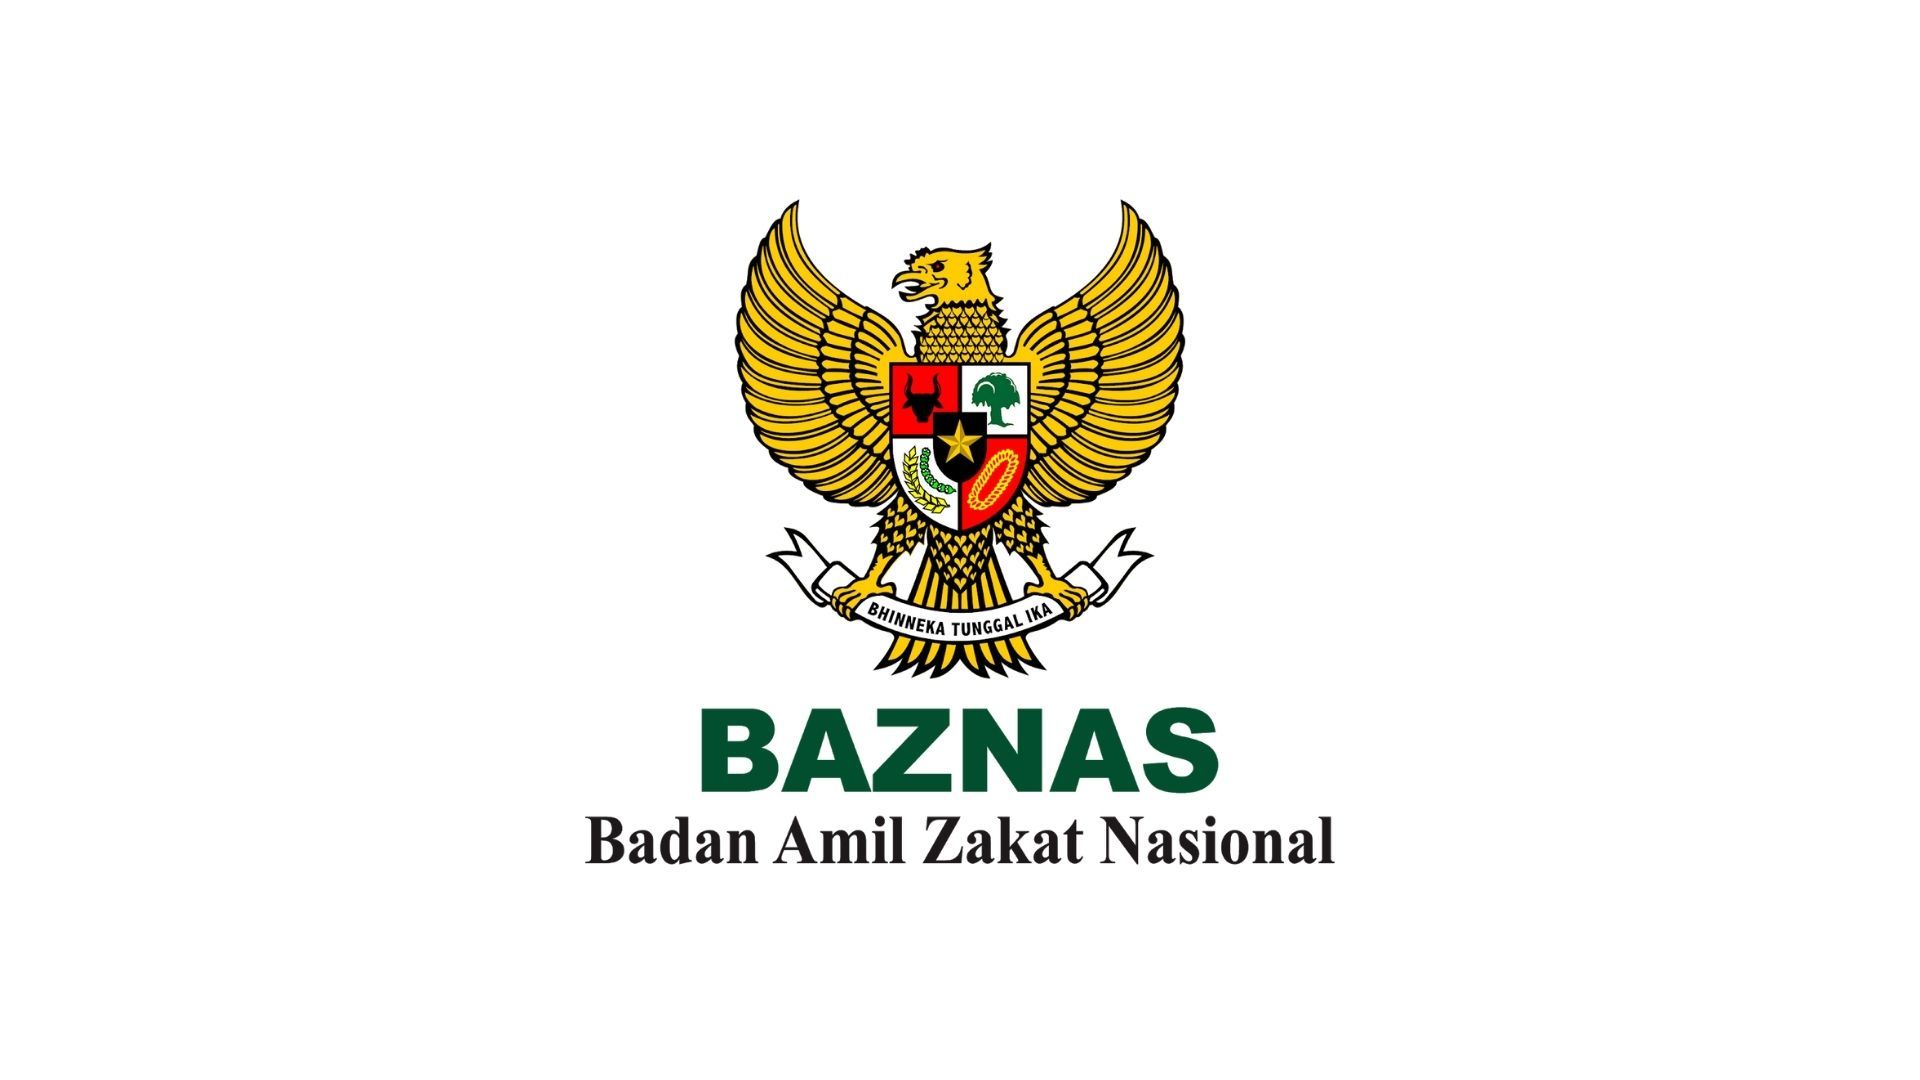 Baznas Provinsi Jawa Barat Membuka Lowongan Kerja untuk Poisis Staf, Berikut Ini Formasi dan Persyaratannya.